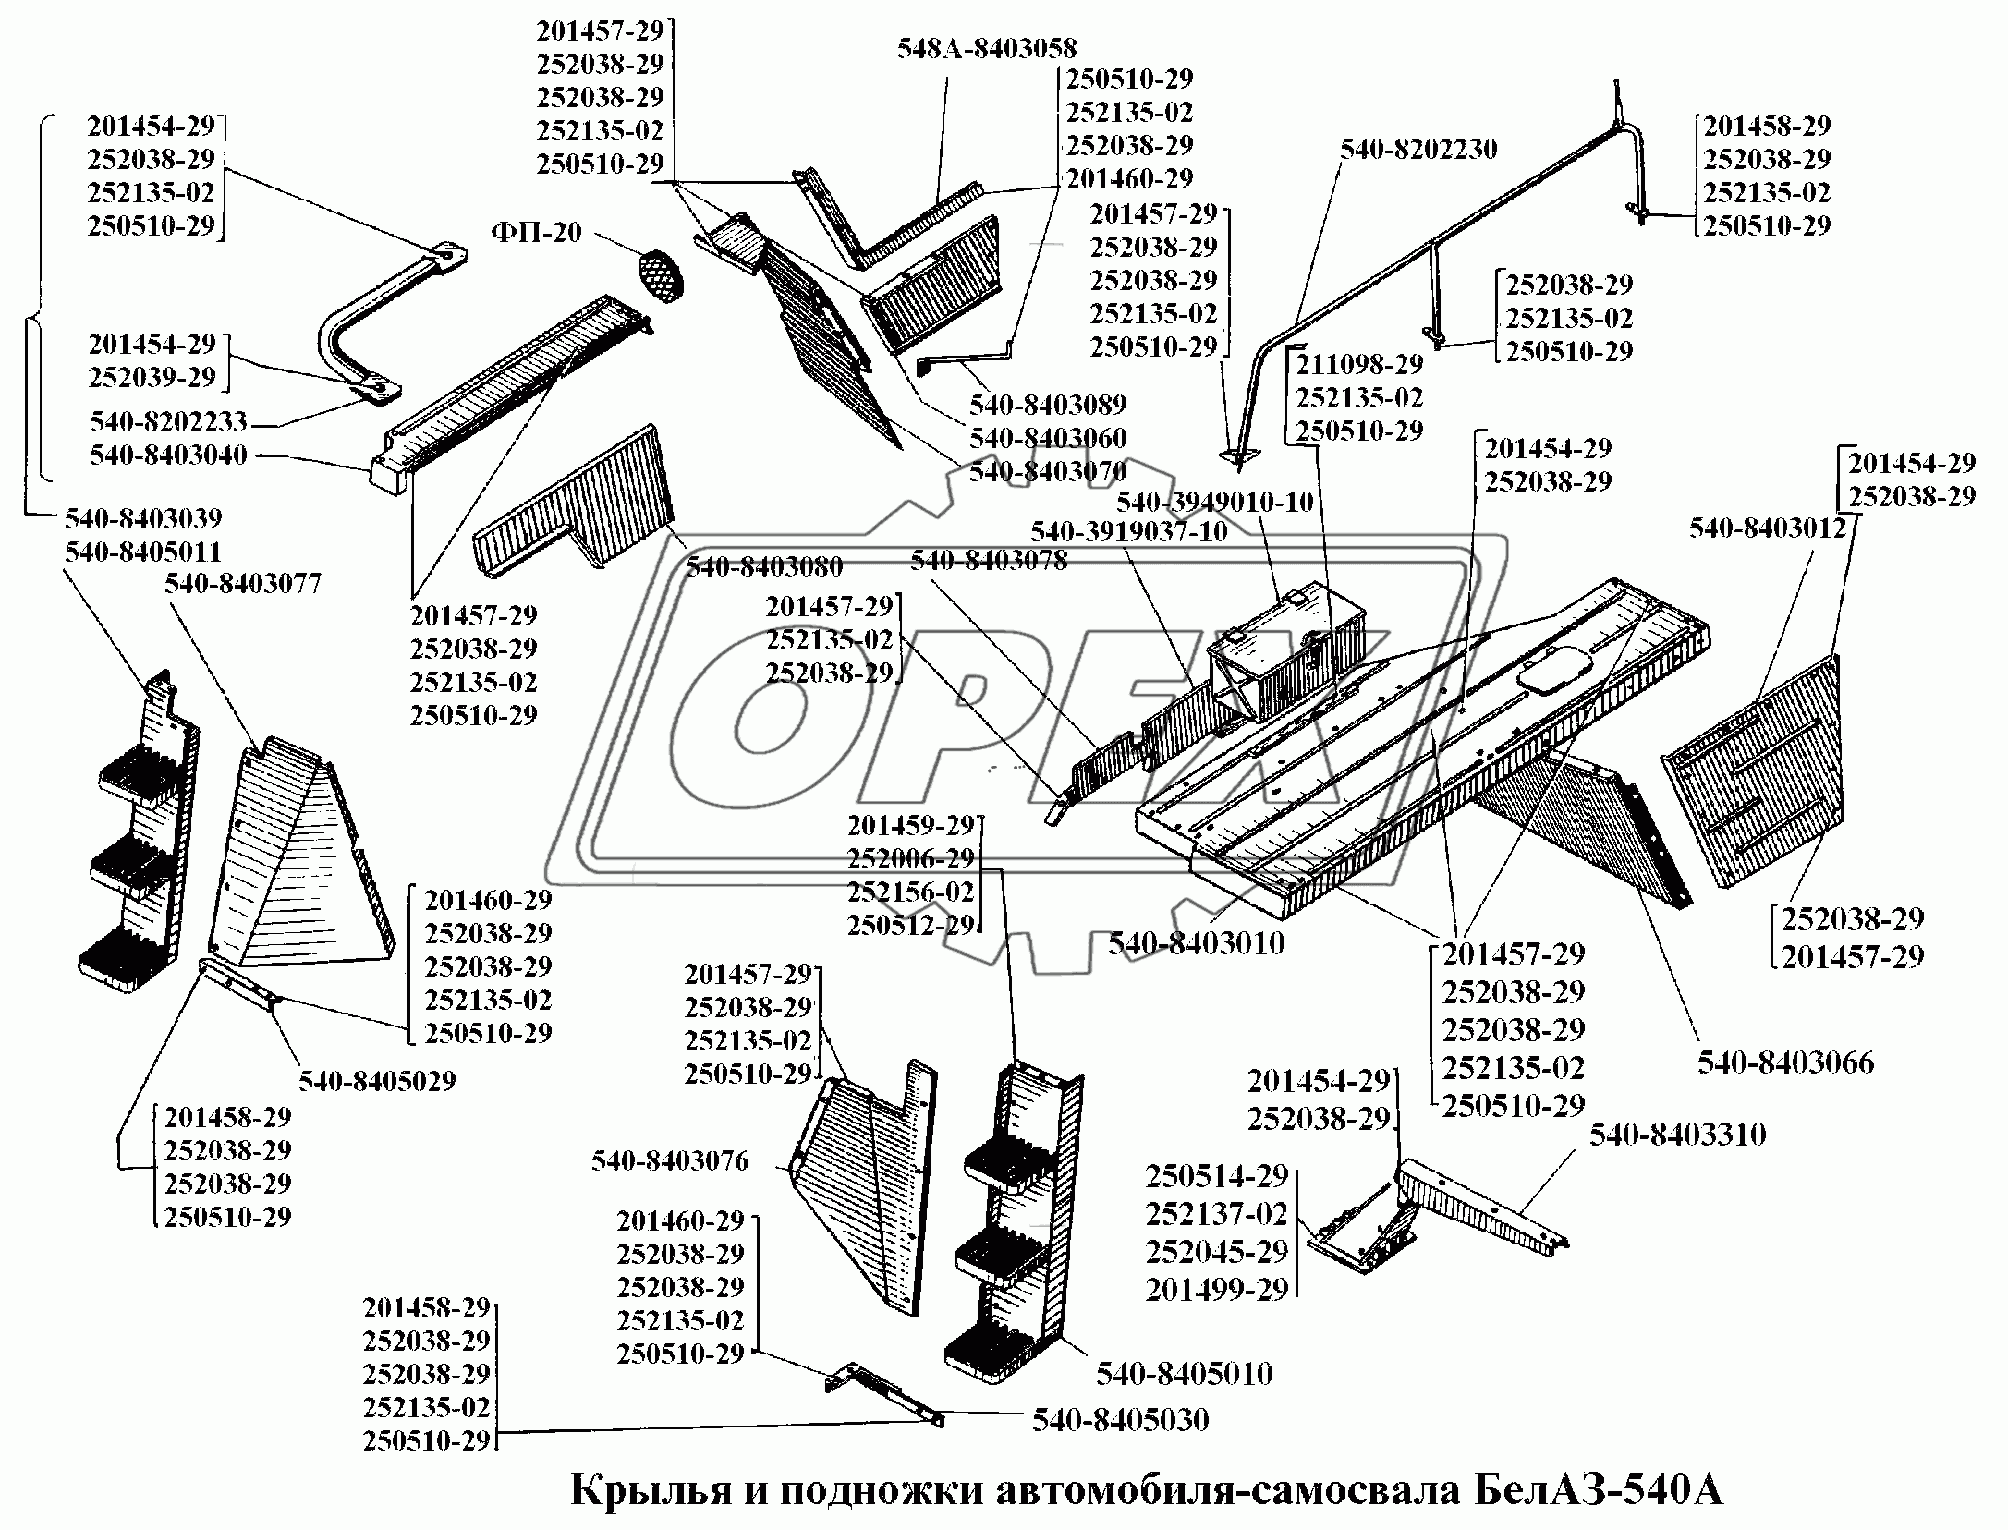 Крылья и подножки автомобиля-самосвала БелАЗ-540А 1